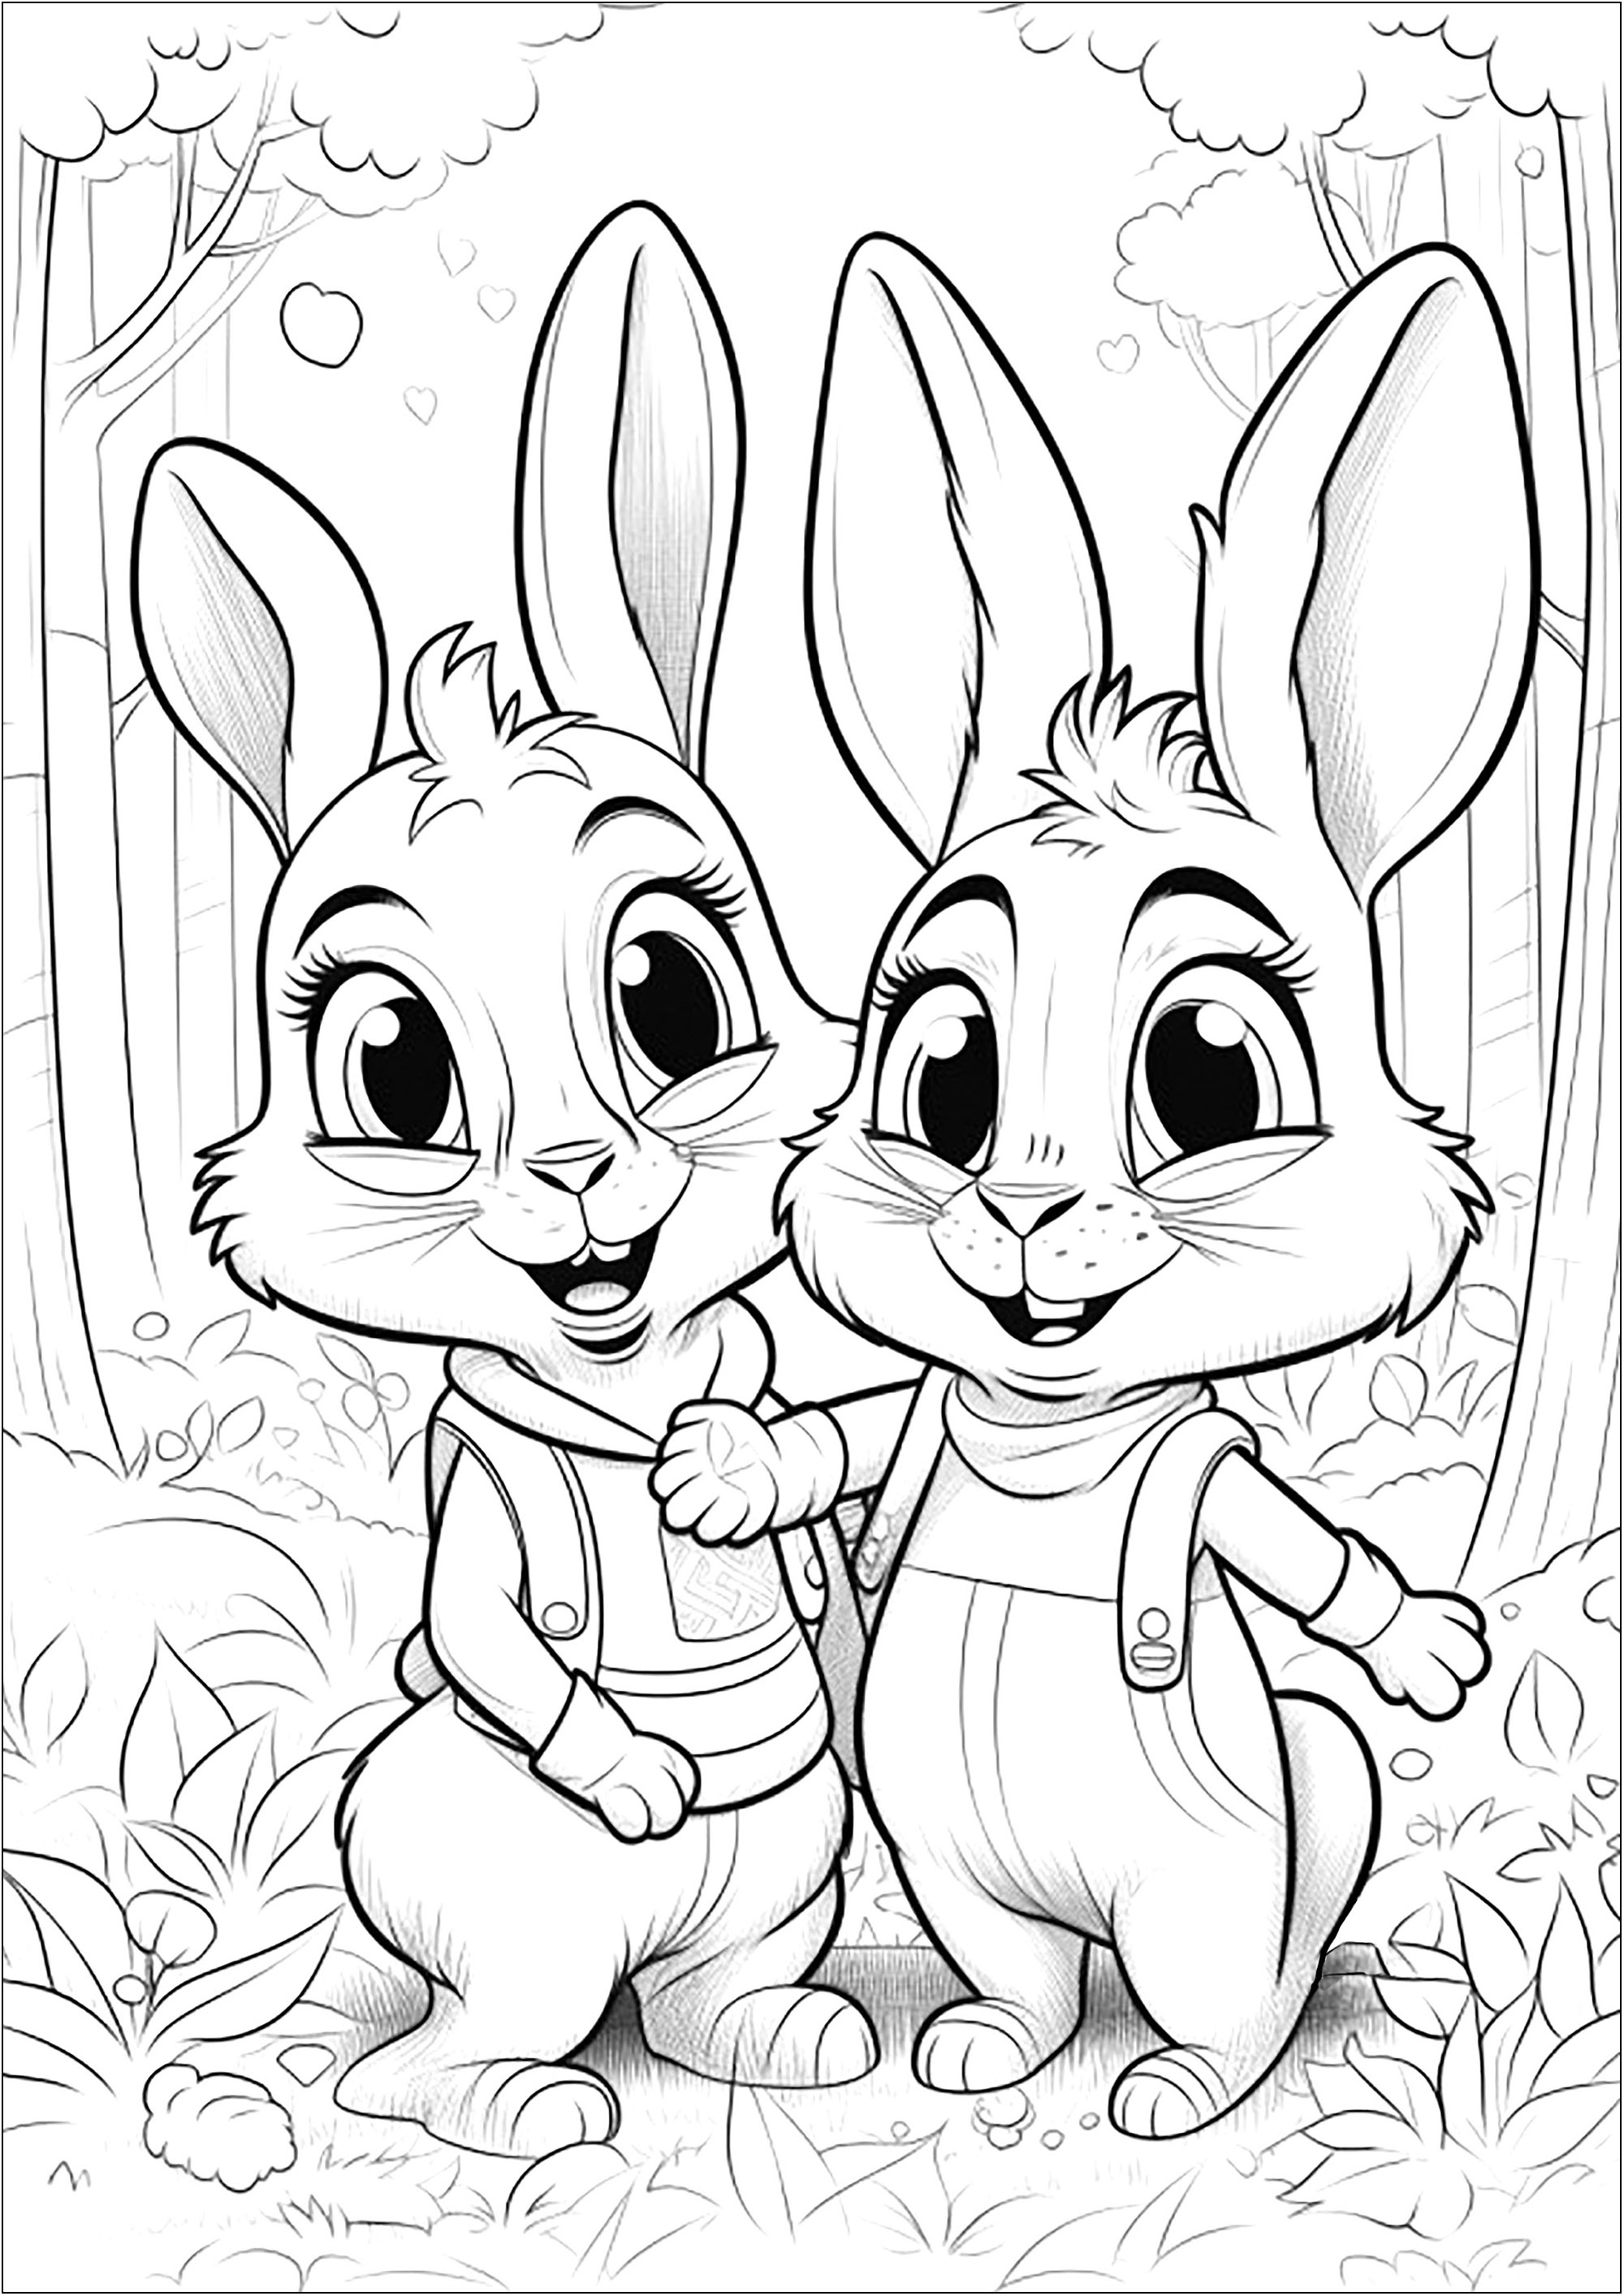 Deux petits lapins dans la forêt - 2. Joli coloriage de deux jolis lapins s'amusant dans la forêt